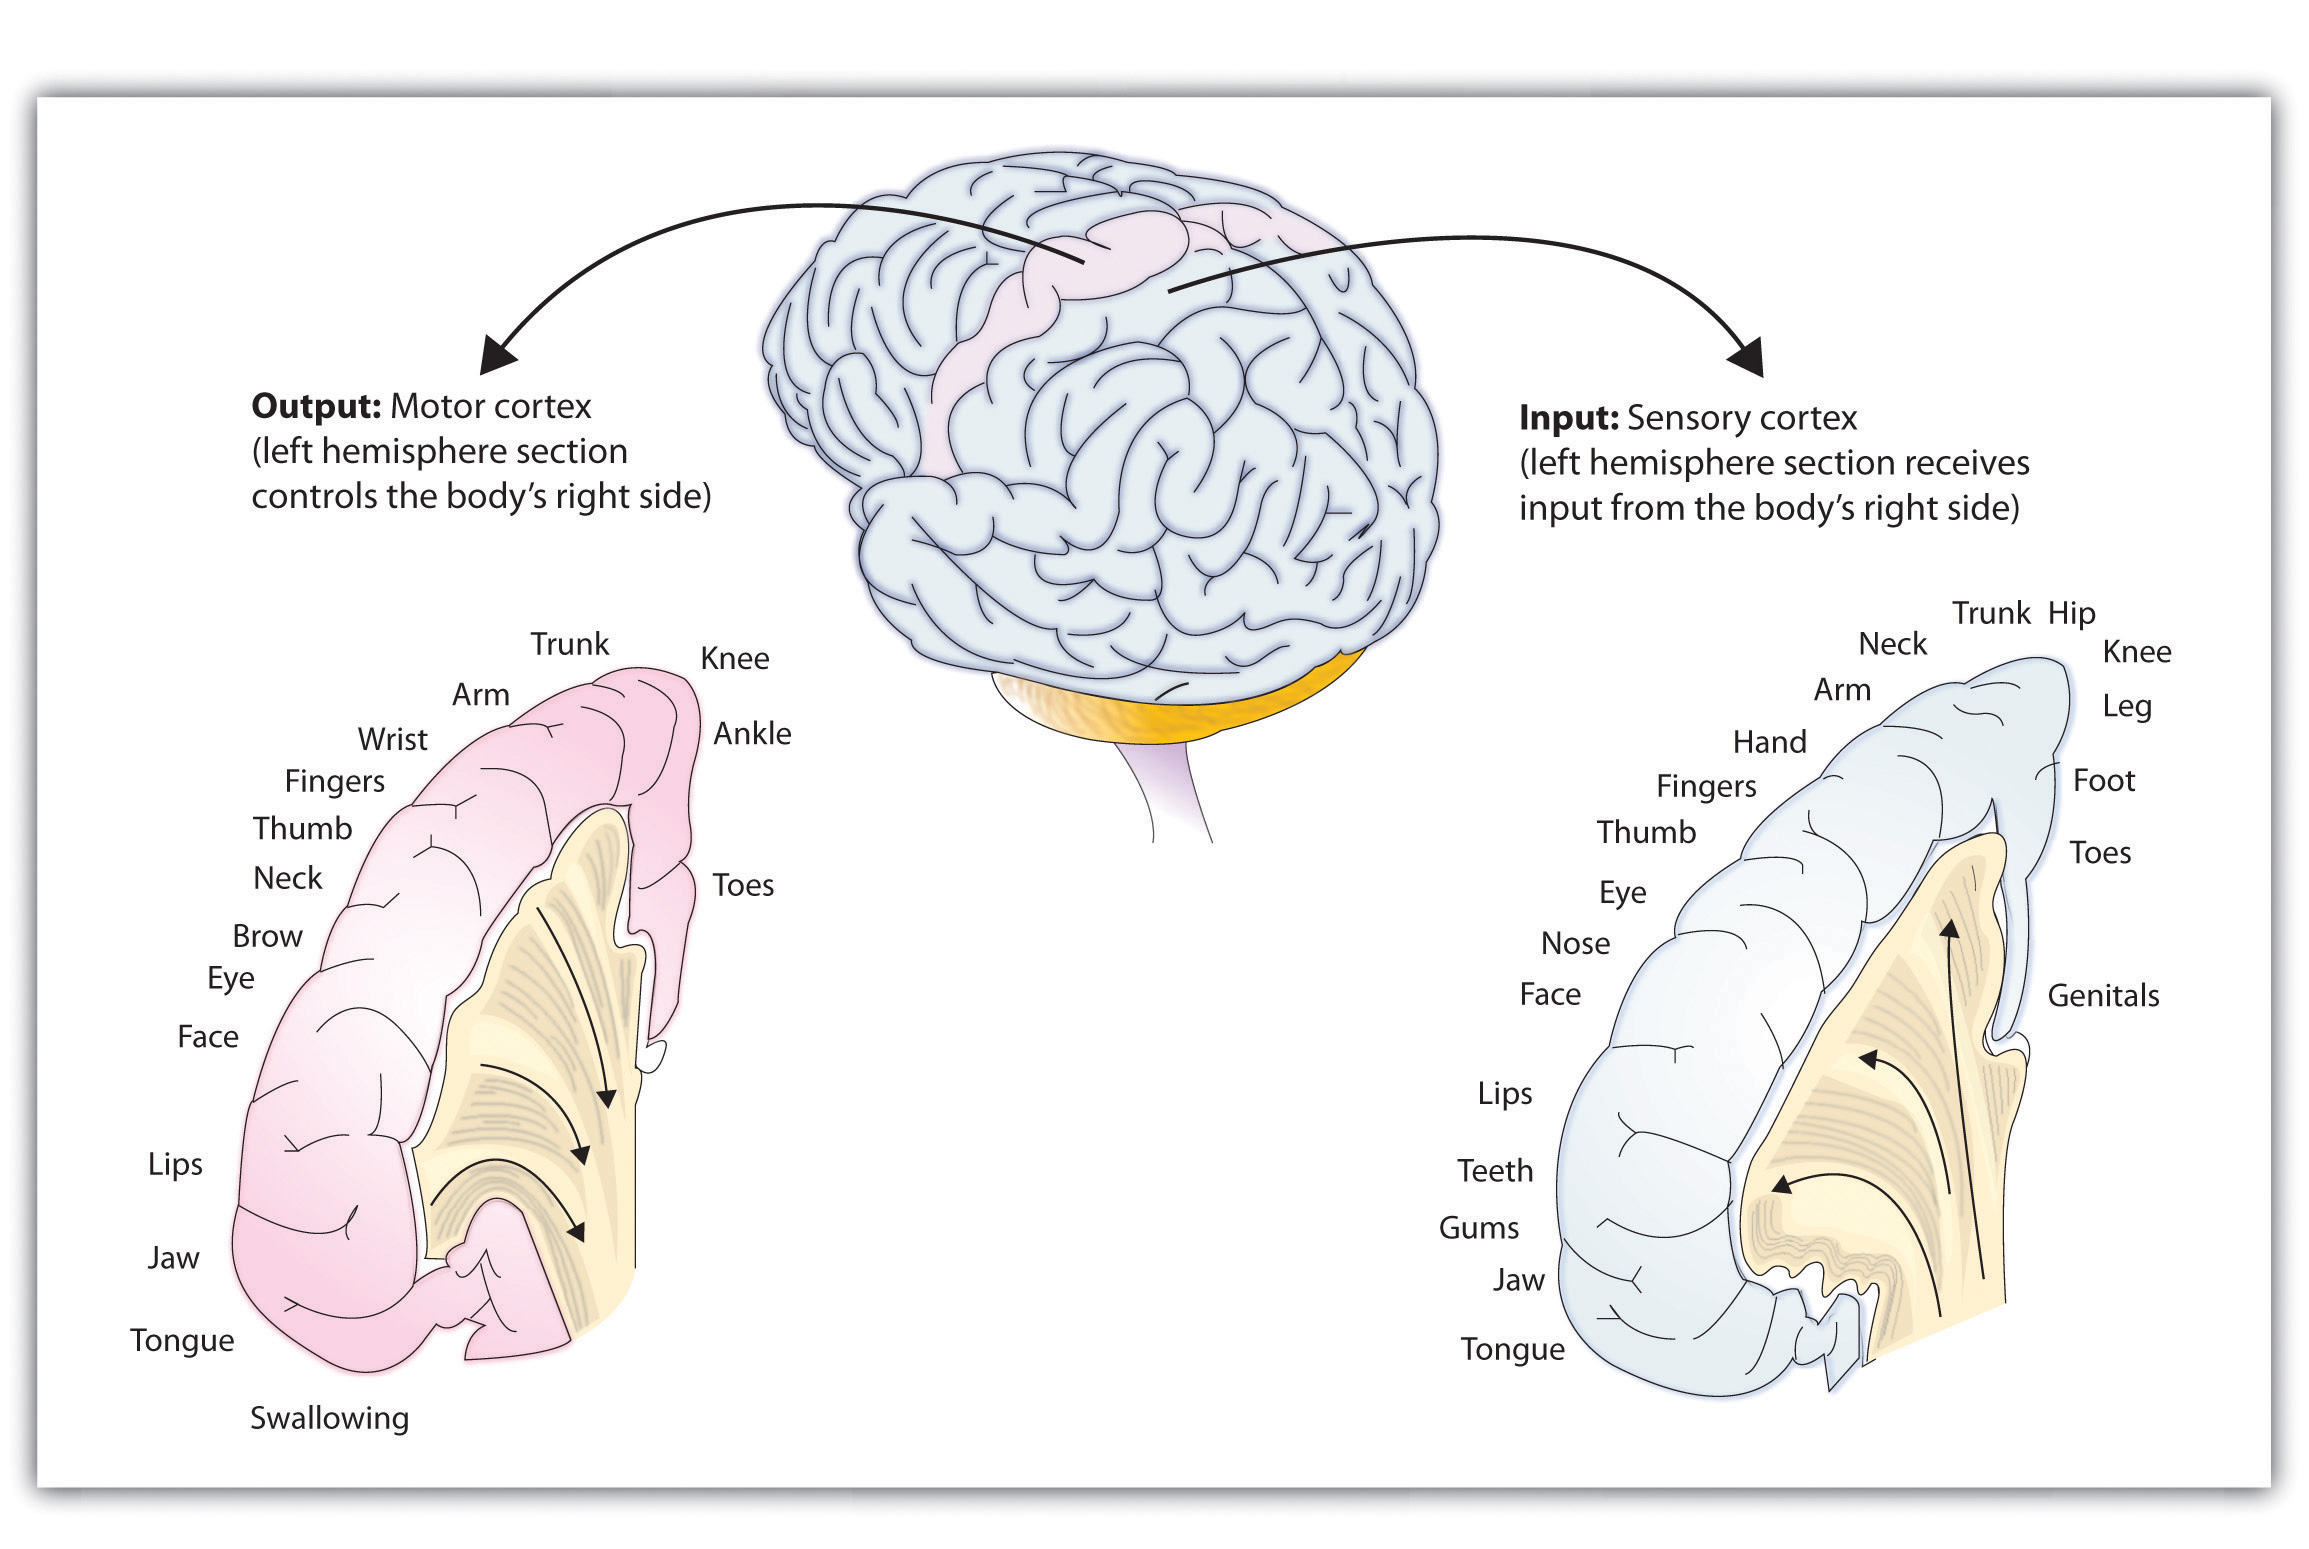 Dibujo de corteza cerebral destacando cortezas sensoriales y motoras primarias mostrando mapas de áreas corporales atendidas por cada una.